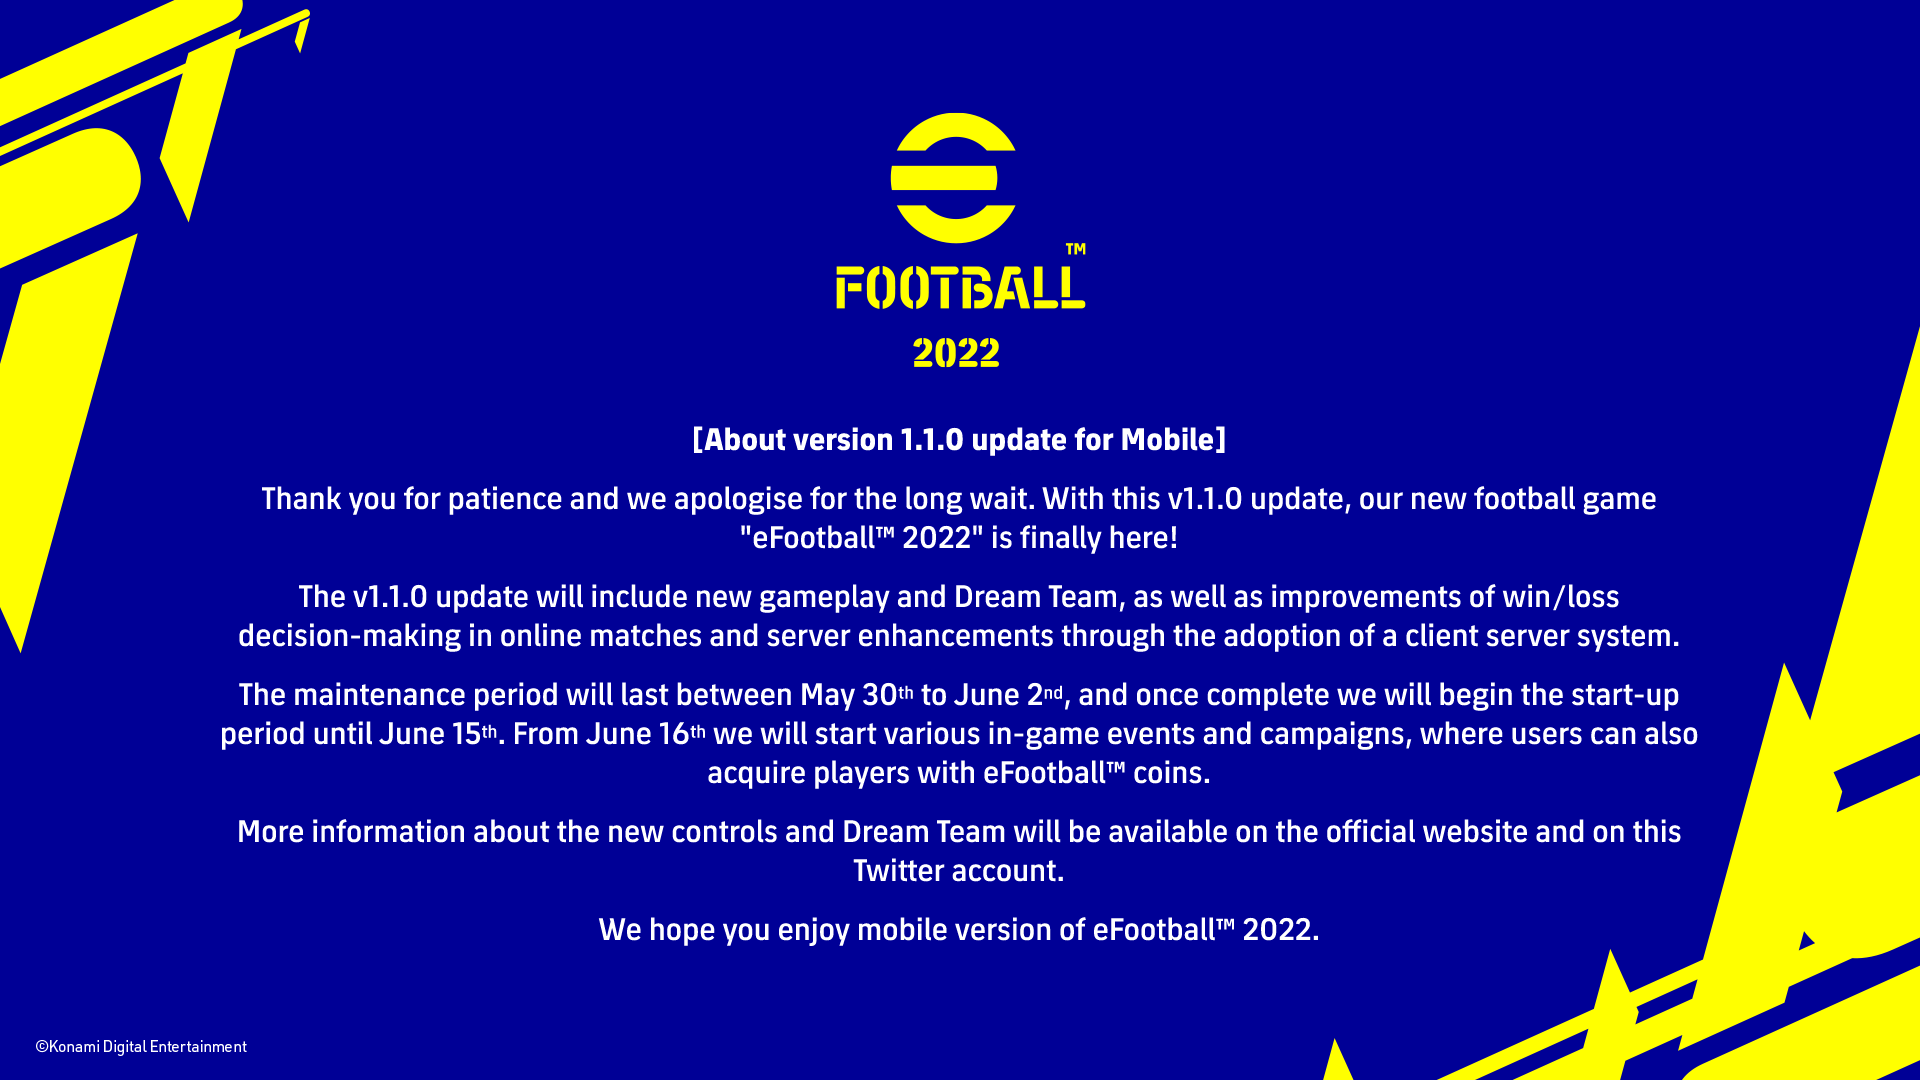 Oficiálne stanovisko Konami k spusteniu mobilnej verzie eFootballu 2022.